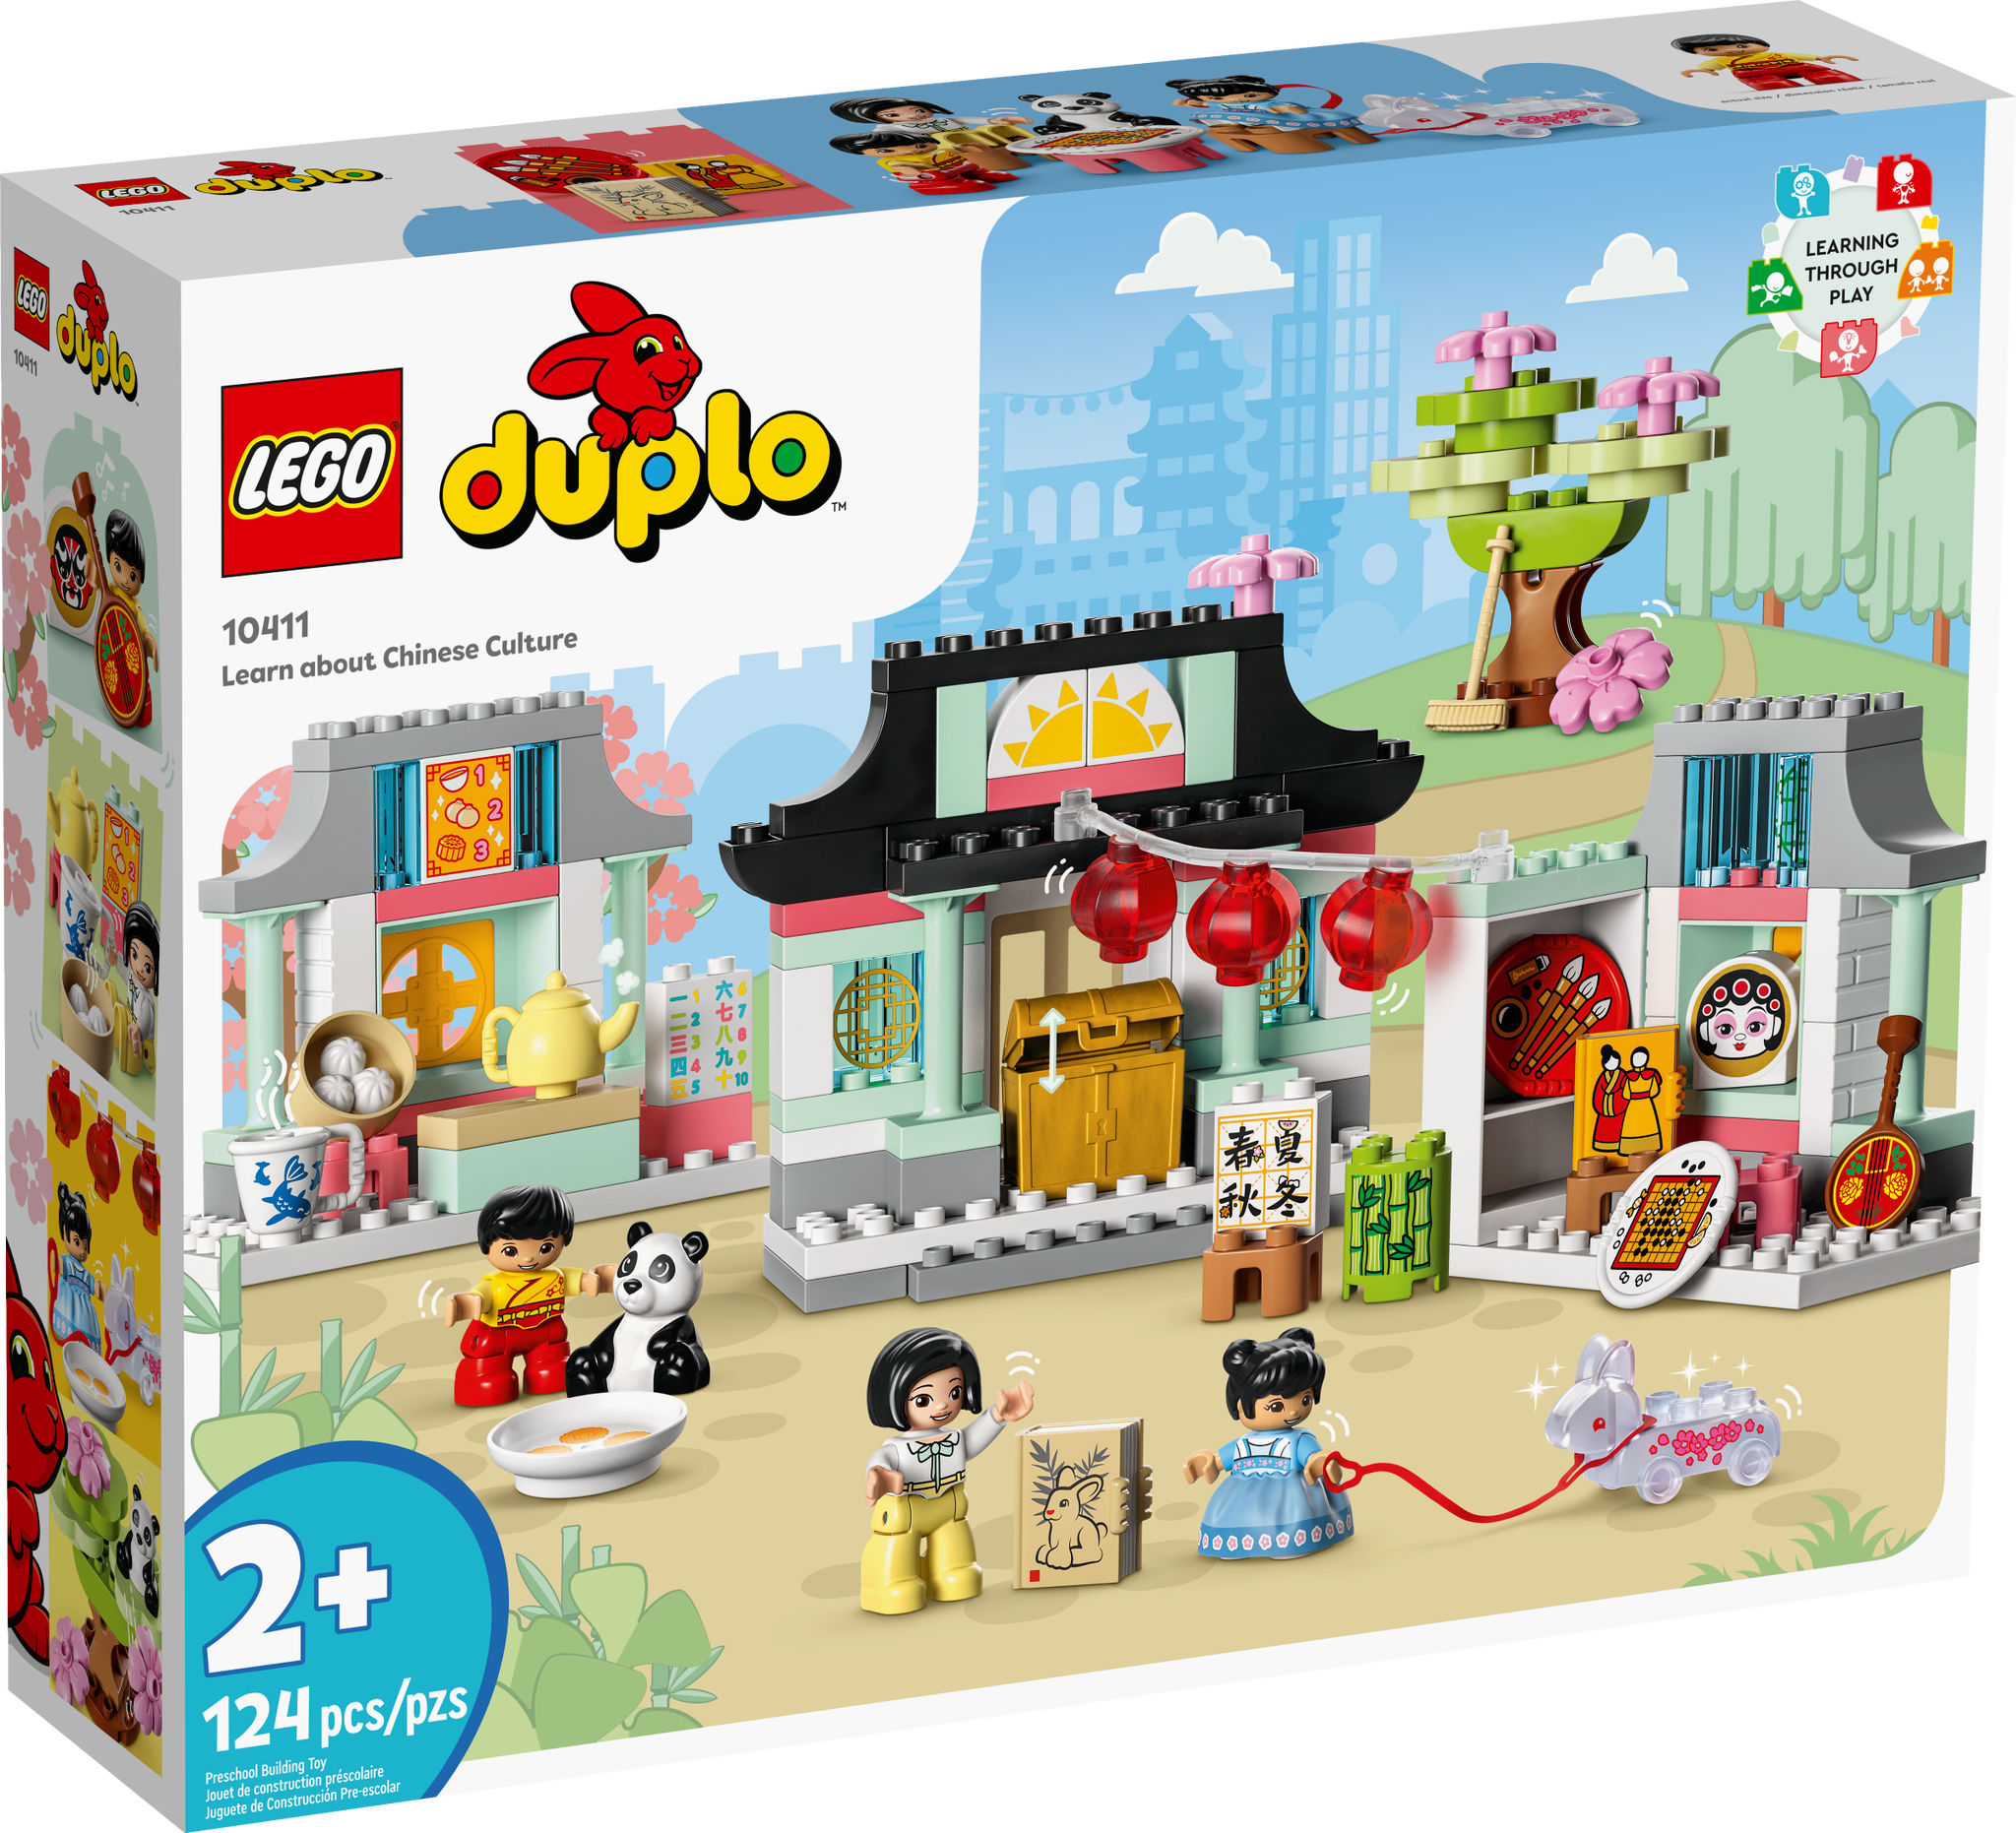 LEGO Duplo Lerne etwas über die chinesische Kultur (10411) - im GOLDSTIEN.SHOP verfügbar mit Gratisversand ab Schweizer Lager! (5702017416960)